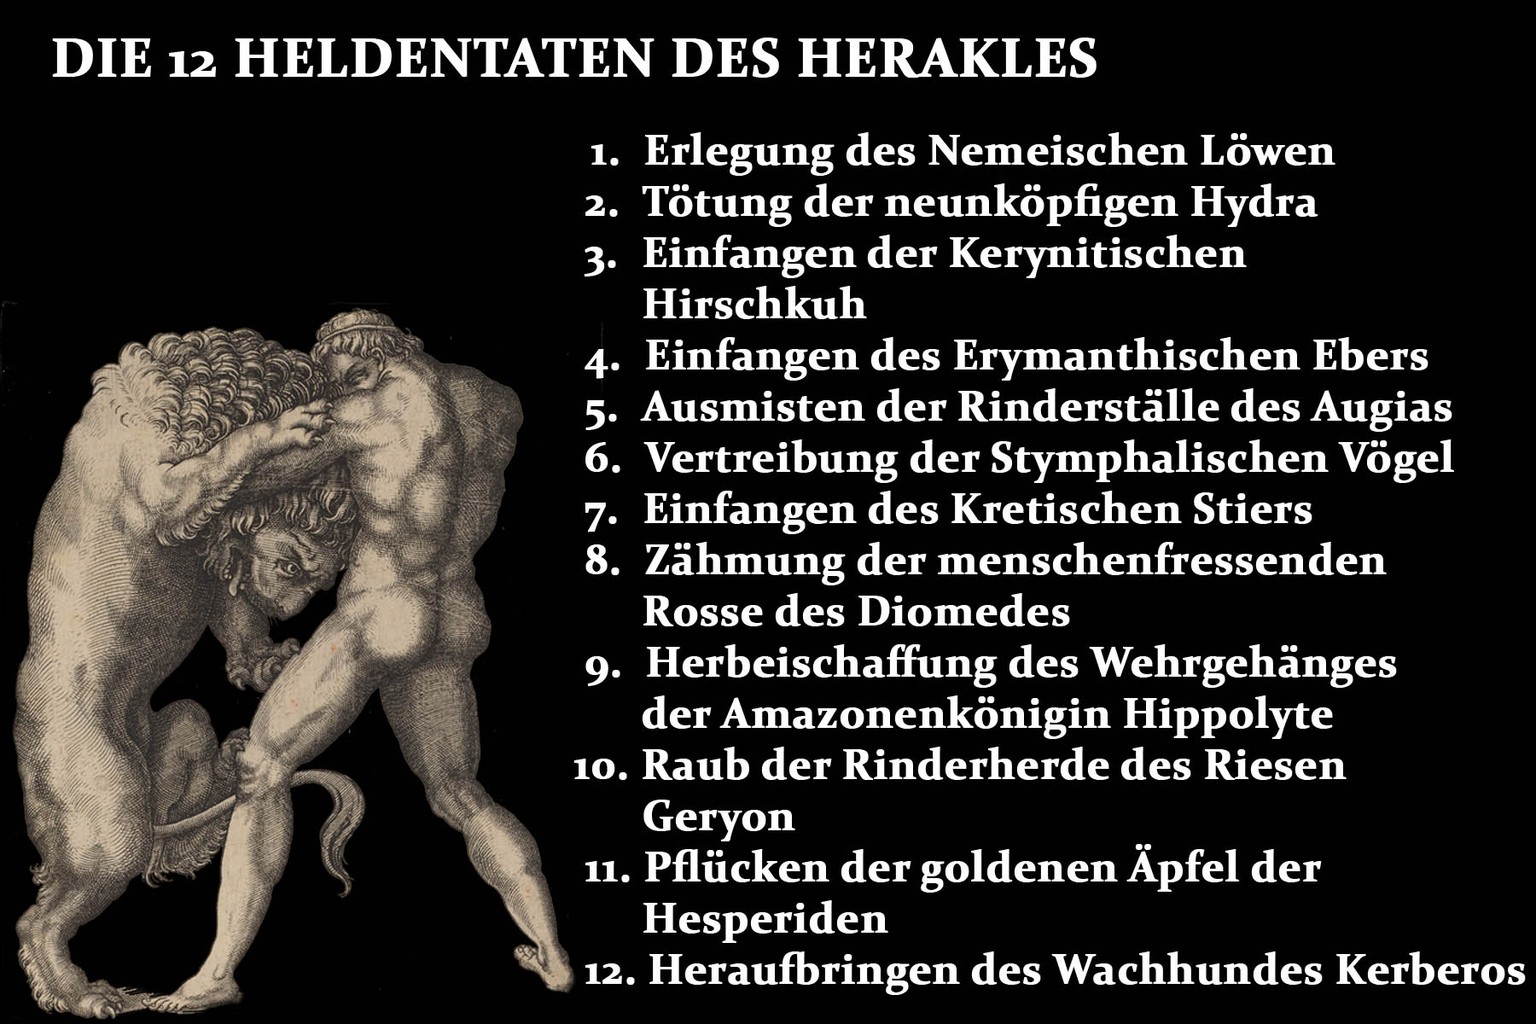 Die 12 Aufgaben des Herakles nach der griechischen Mythologie.